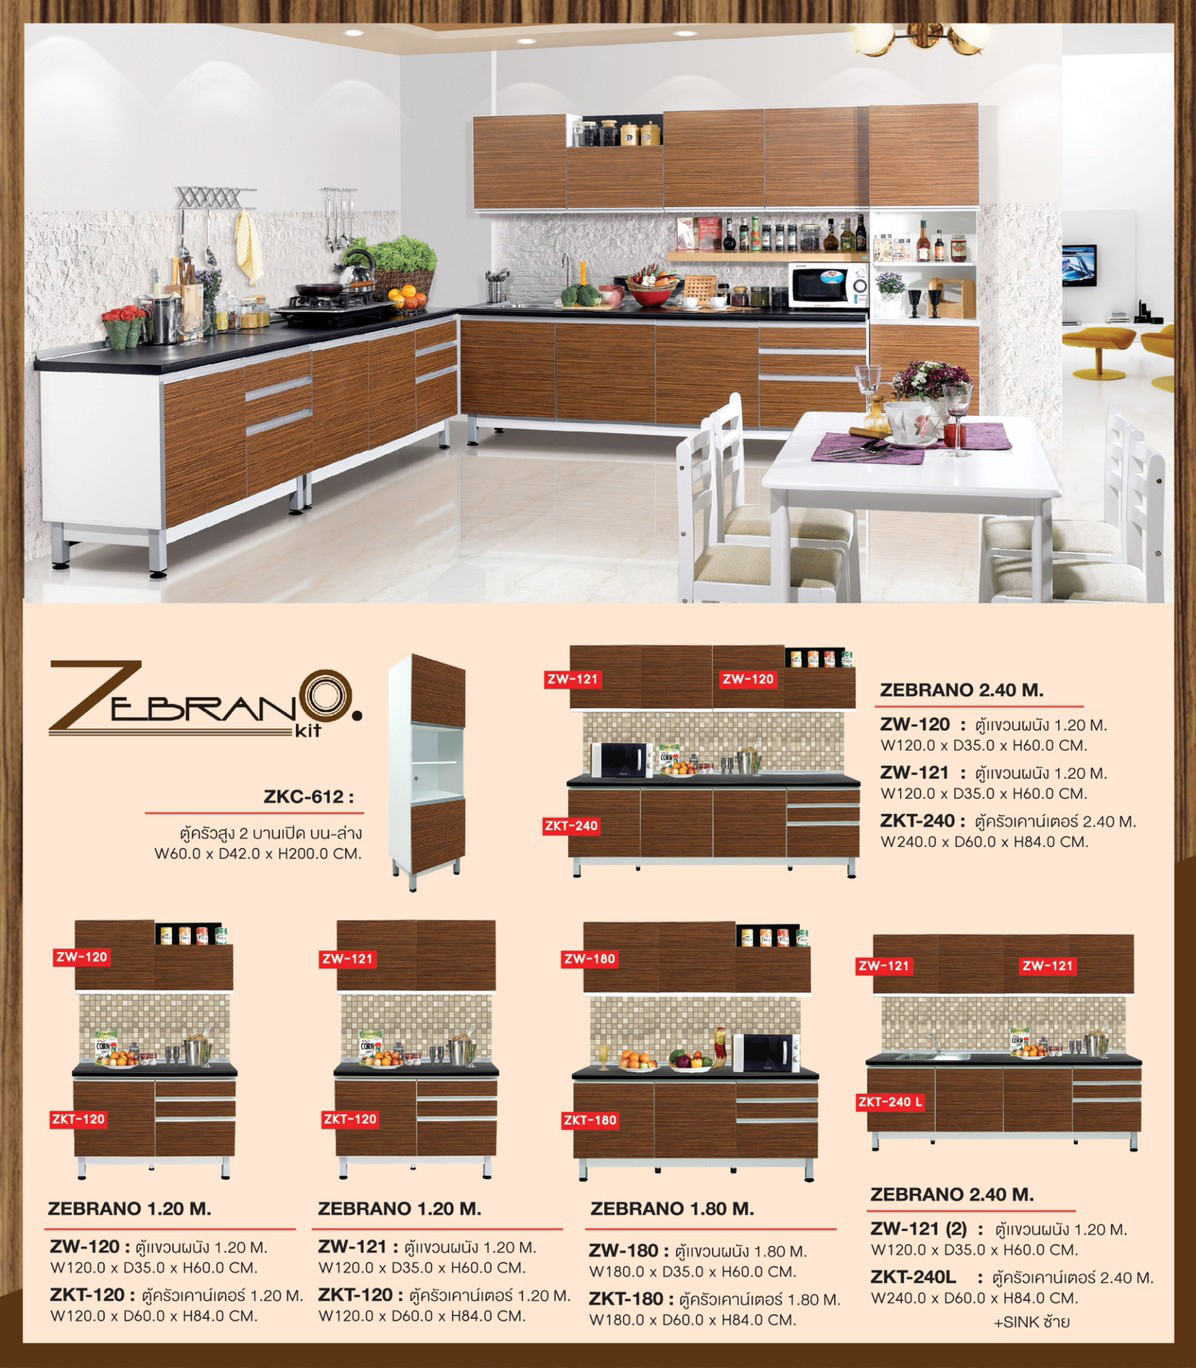 97072::ZKC-612::ตู้ครัวสูง 2 บานเปิด บน-ล่าง ก600xล420xส2000 มม. ชุดห้องครัว SURE